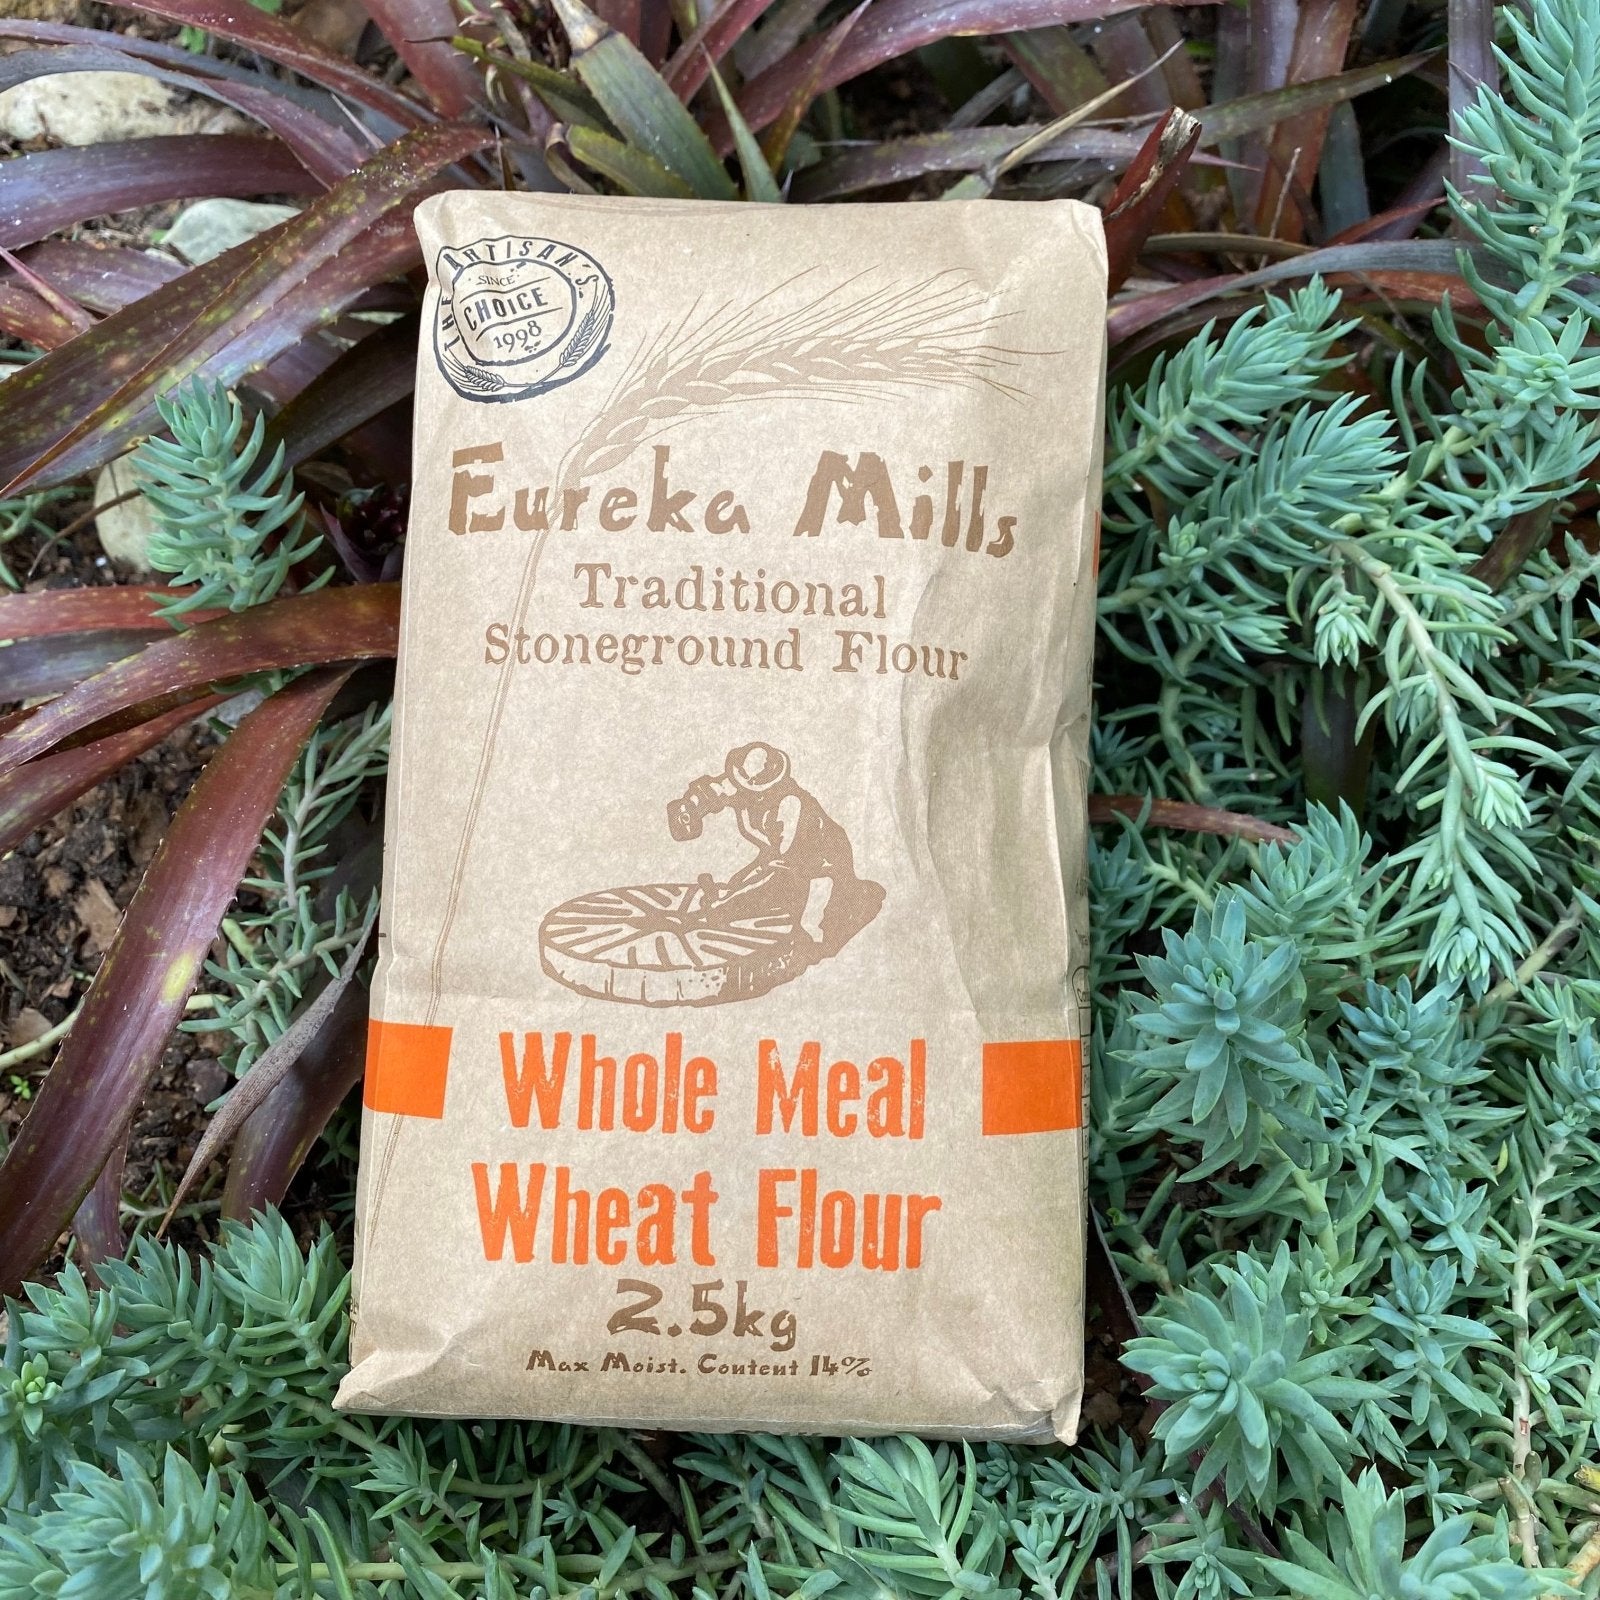 Eureka Mills Stone Ground Whole Meal Flour (2.5kg) - The Deli